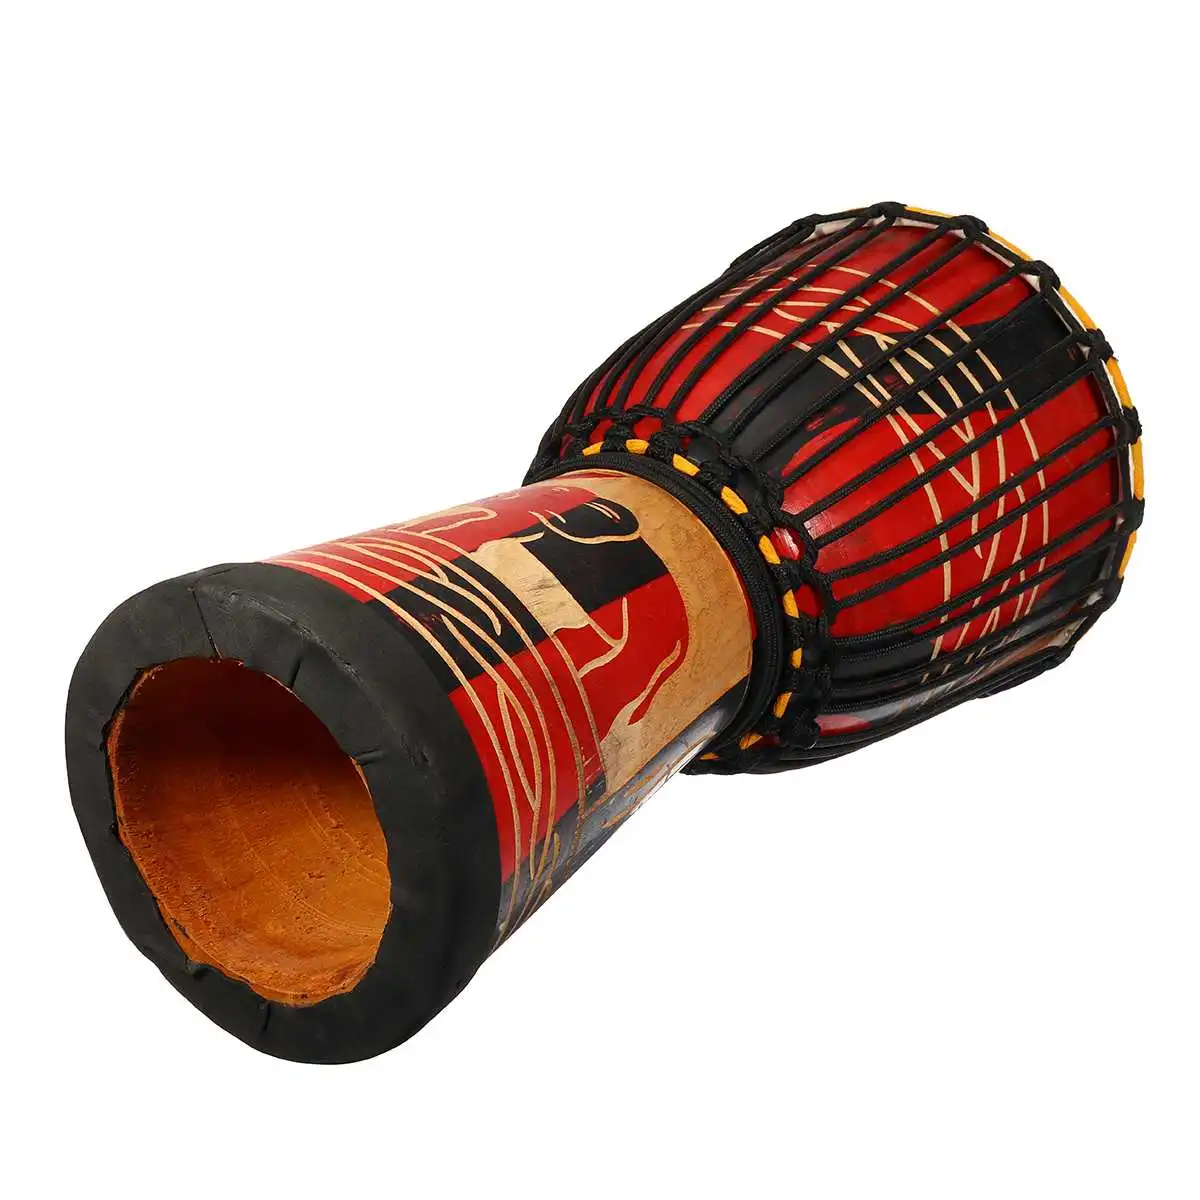 10 дюймов Африканский ручной деревянный барабан Djembe красное дерево тело козья овчина музыкальный инструмент Африканский барабан скульптура из дерева для детей игрушки